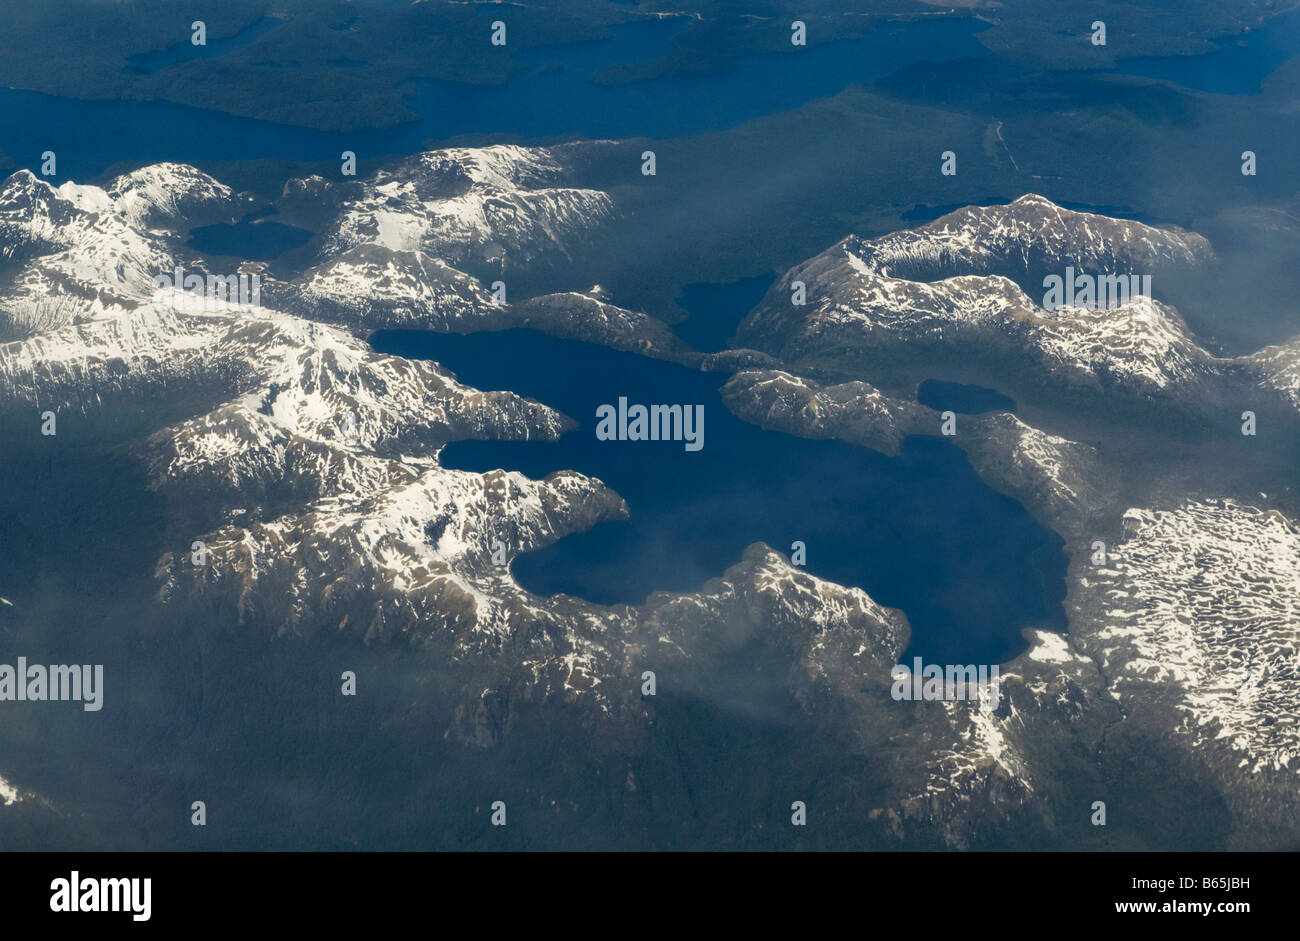 Lago oder See Costancia, Antenne, Nationalpark Puyehue, Chile (Schuss aus kommerziellen Jet Fenster: begrenzt die Bildschärfe) Stockfoto